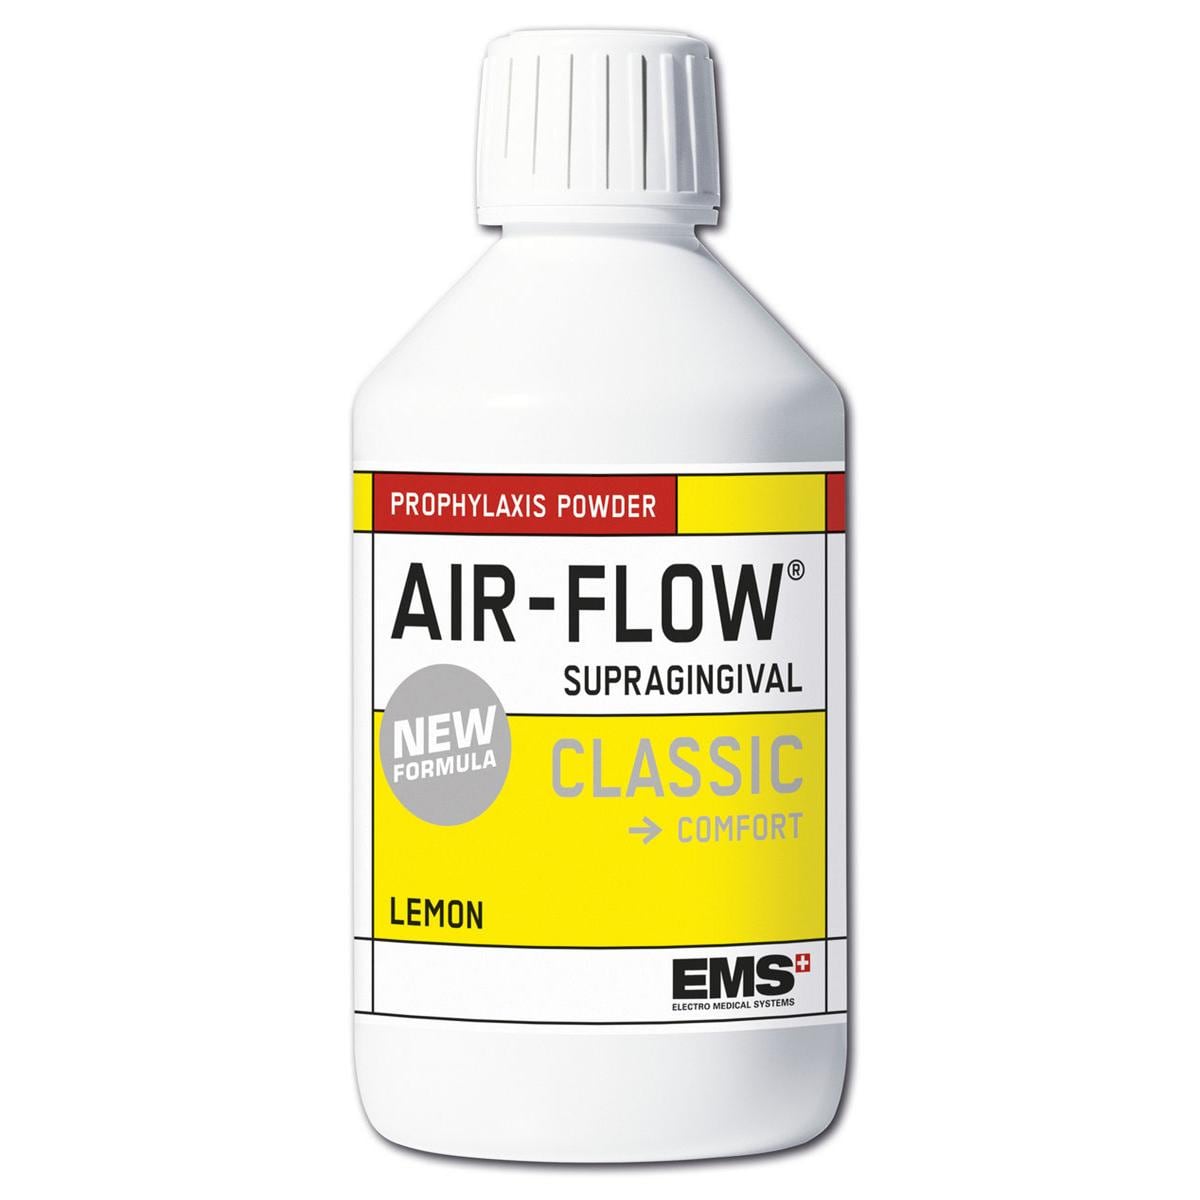 AIR-FLOW poudre CLASSIC - flacons - New lemon, 4x 300 g